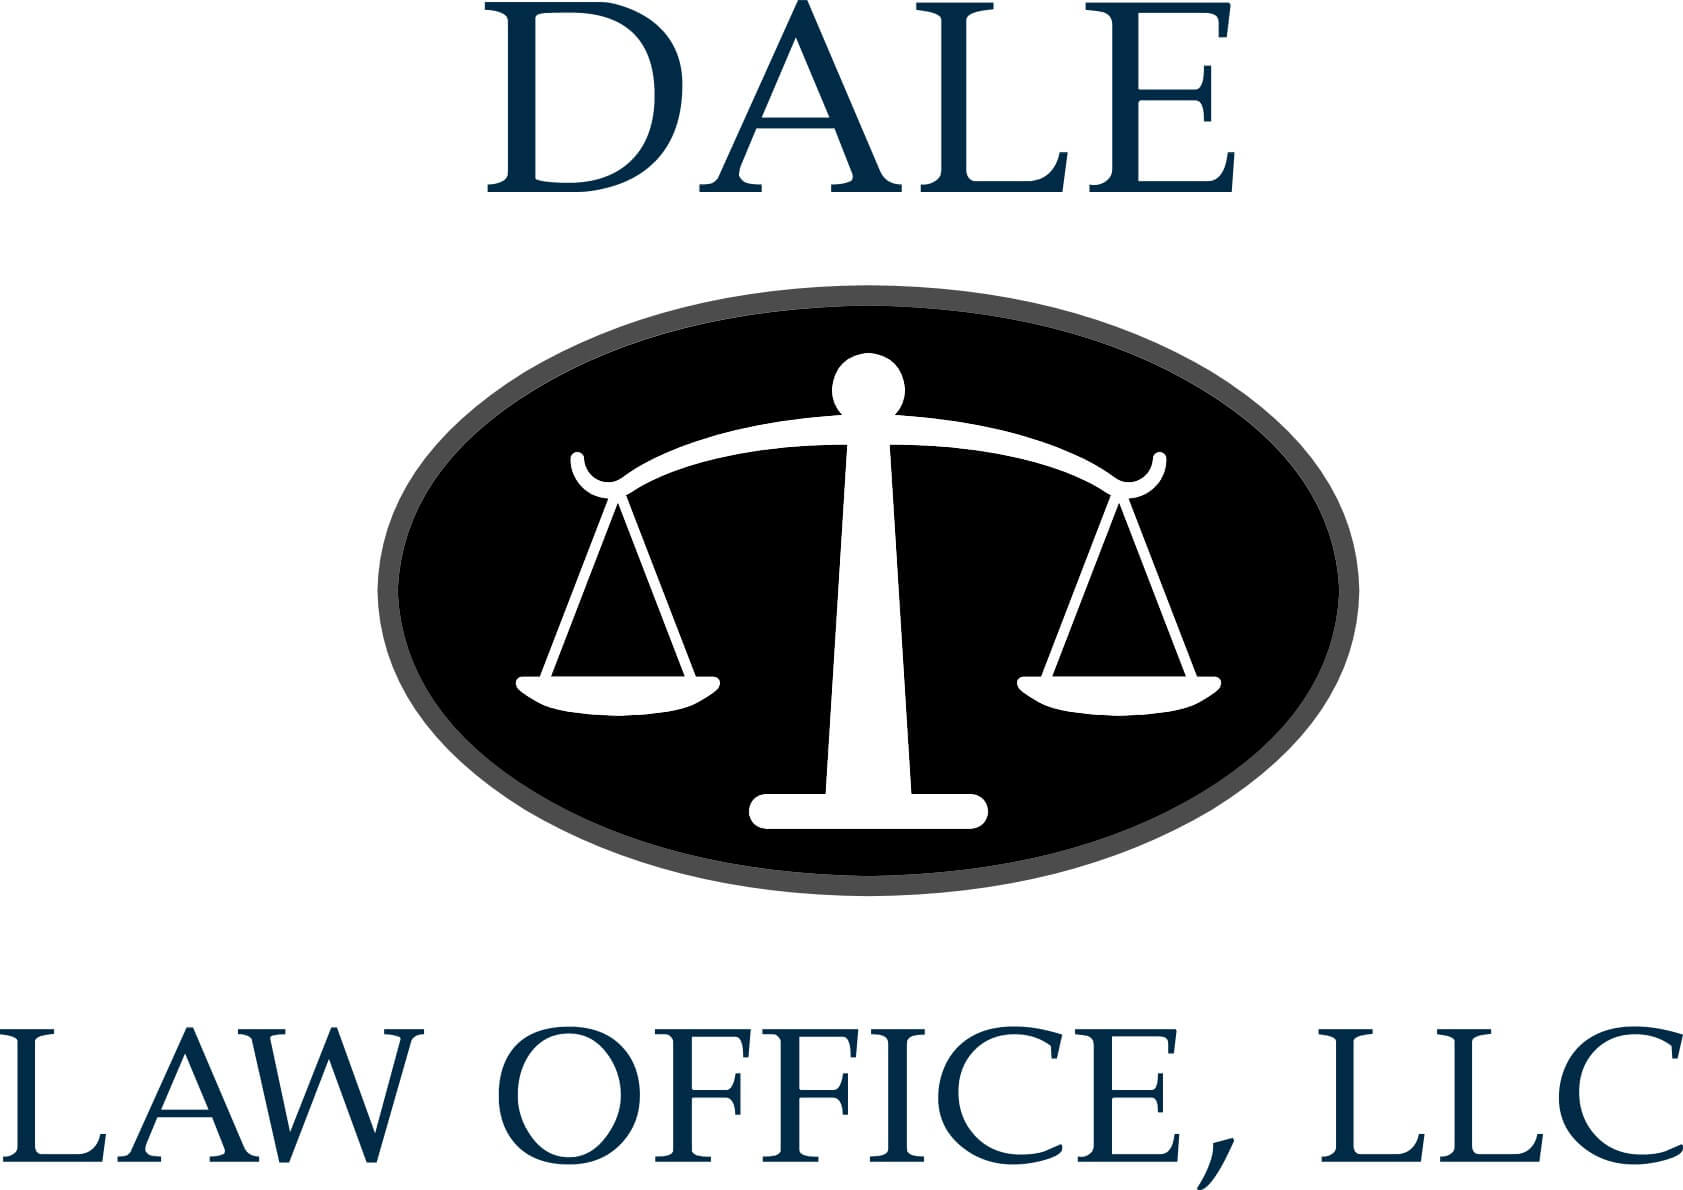 Dale Law Office, LLC $500 Sponsor